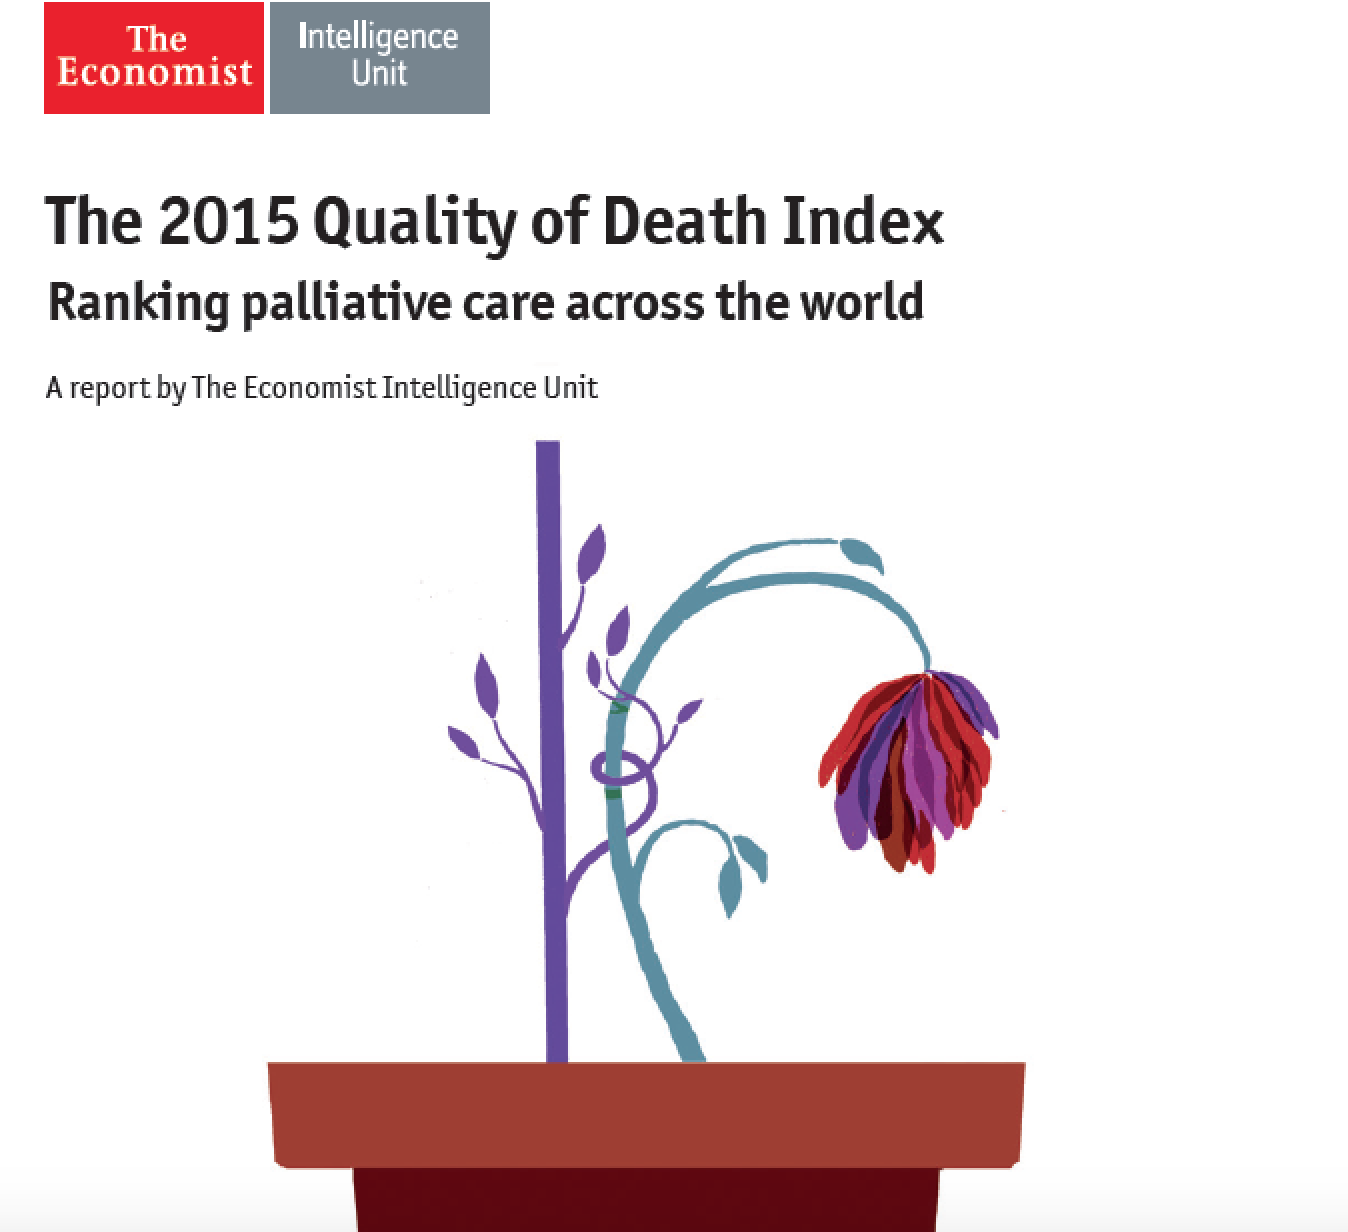 Divulgado Índice de Qualidade de Morte 2015, da Economist Intelligence Unit